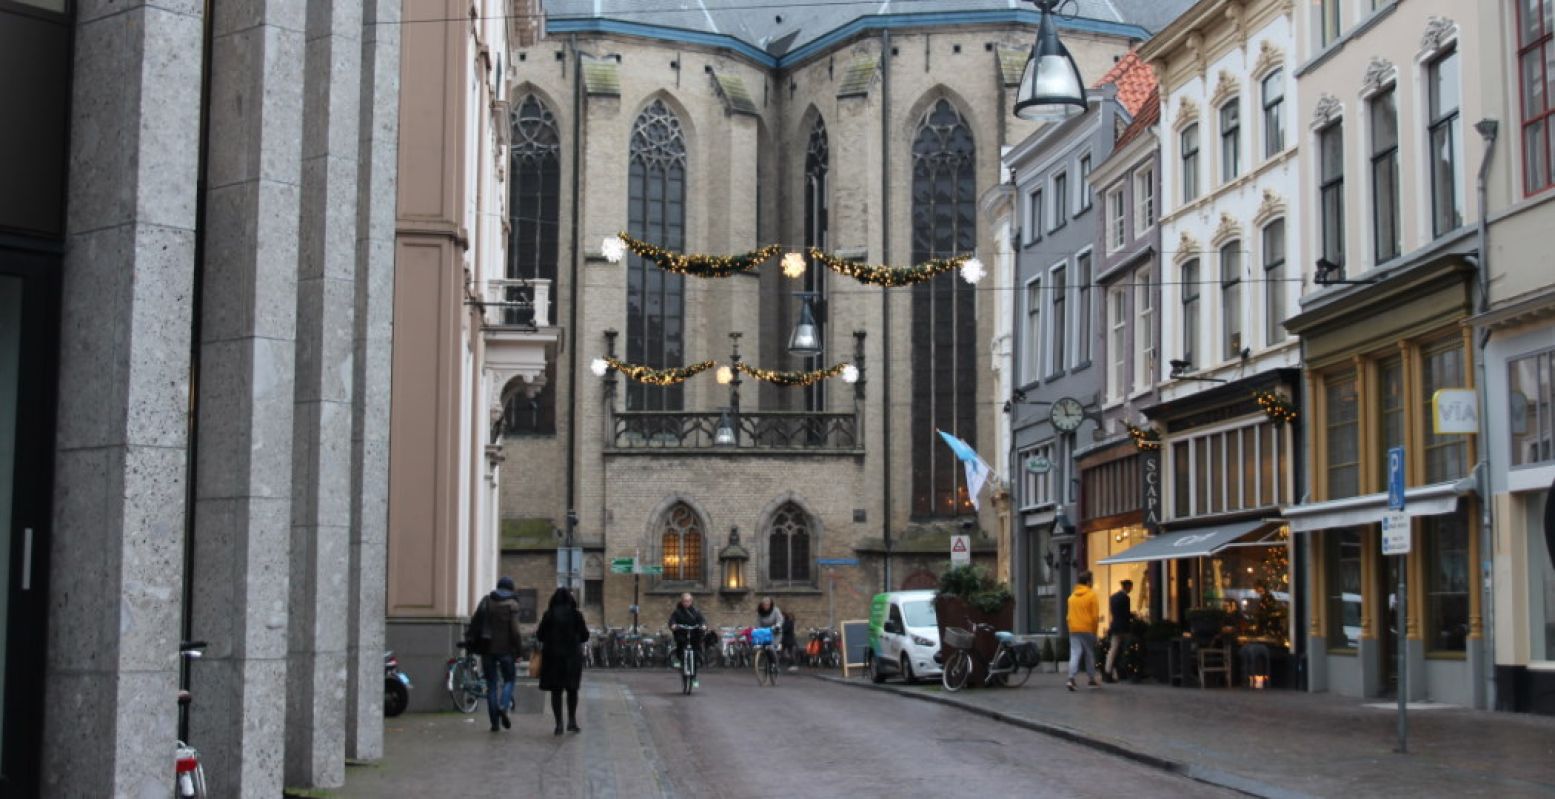 Zwolle heeft een gezellige binnenstad met de Grote Kerk in het midden. Foto: DagjeWeg.NL